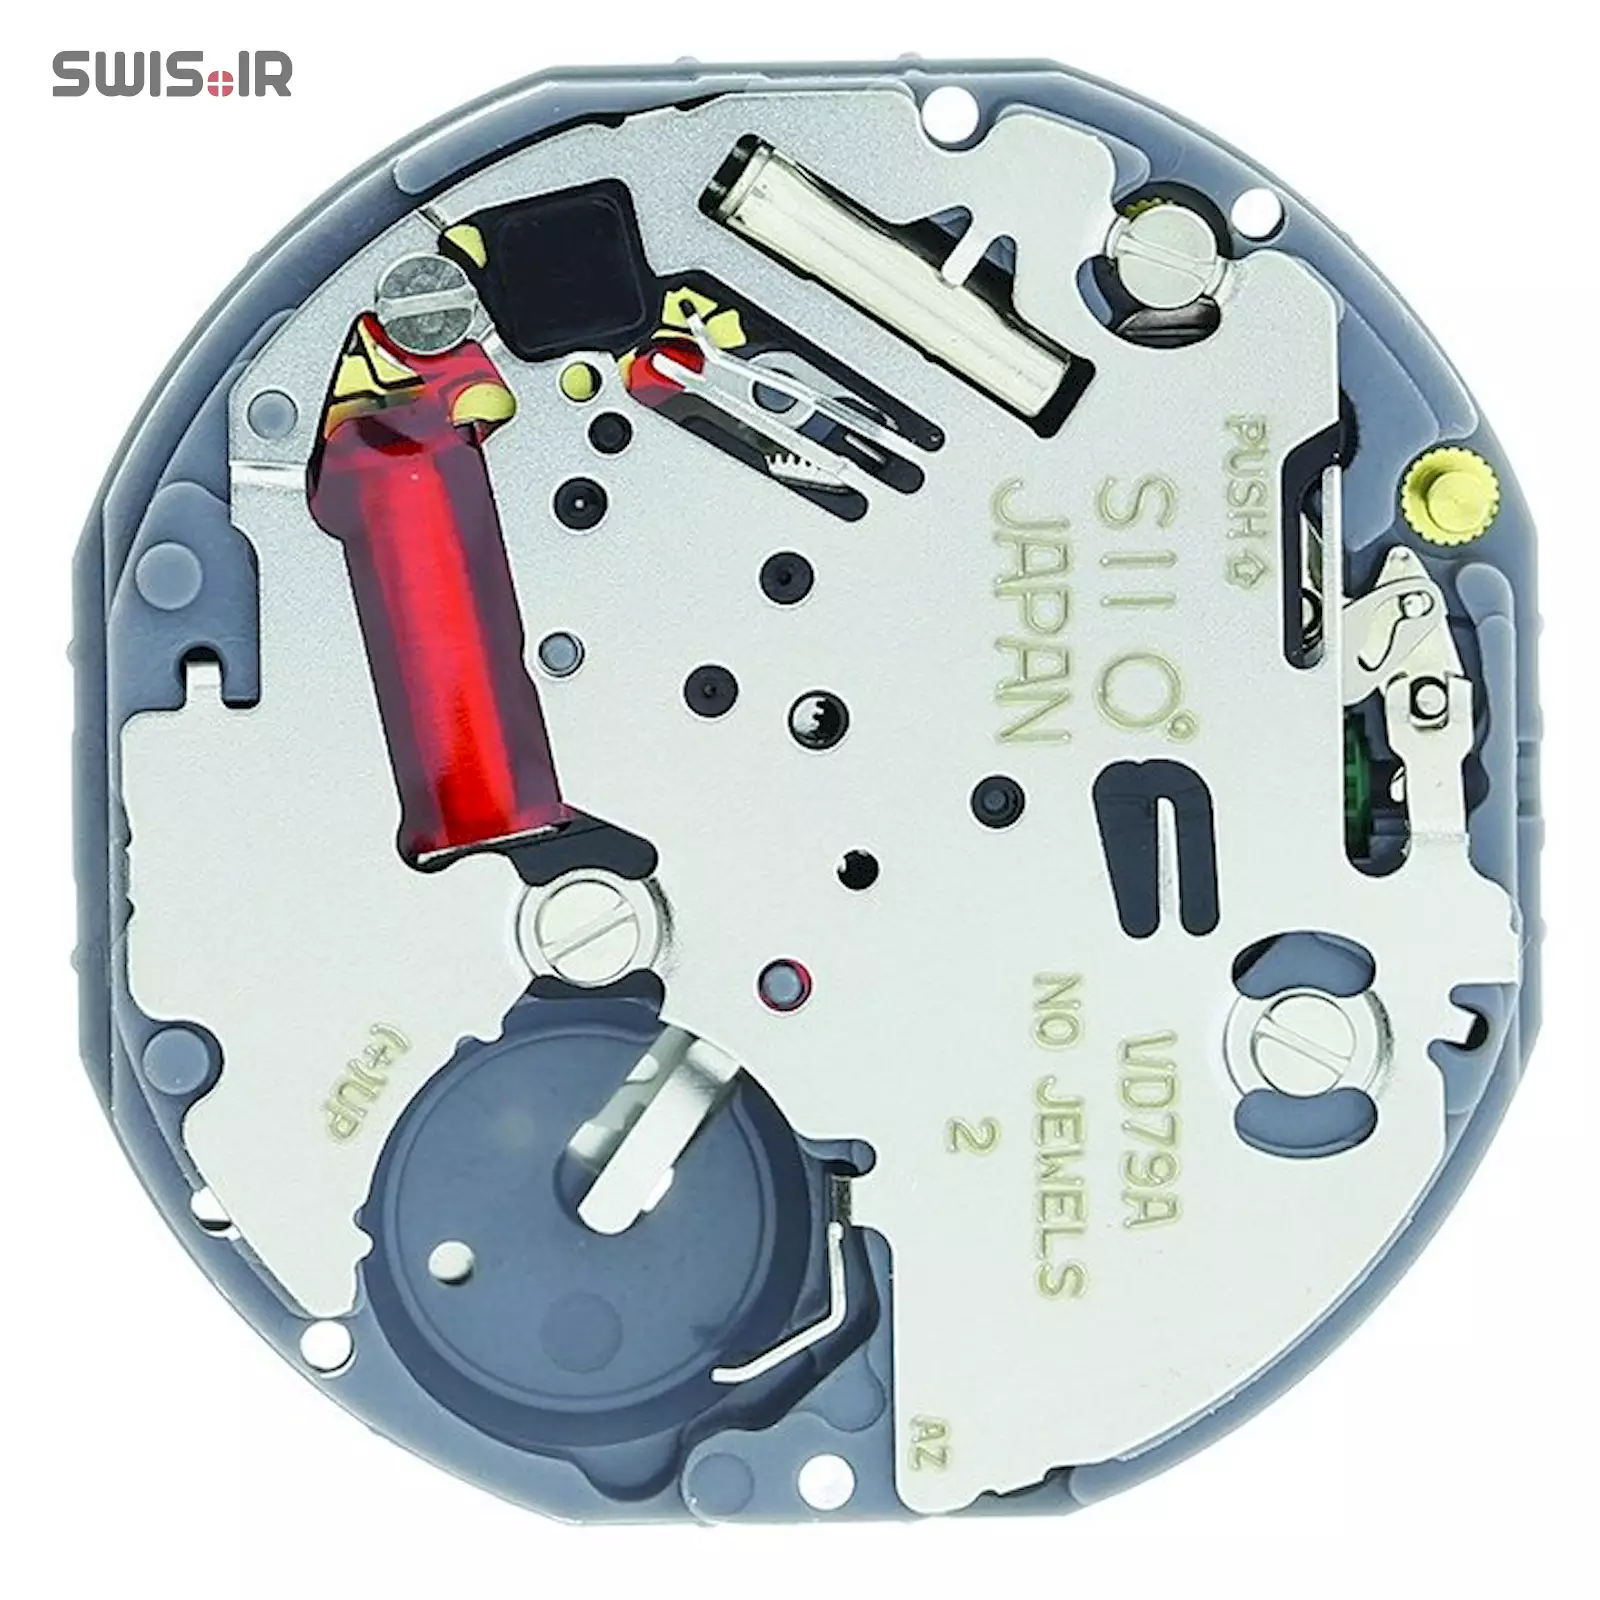 تصویر پشت موتور ساعت کالیبر VD79A-SII ساخت شرکت سیکو ـ اپسون ژاپن